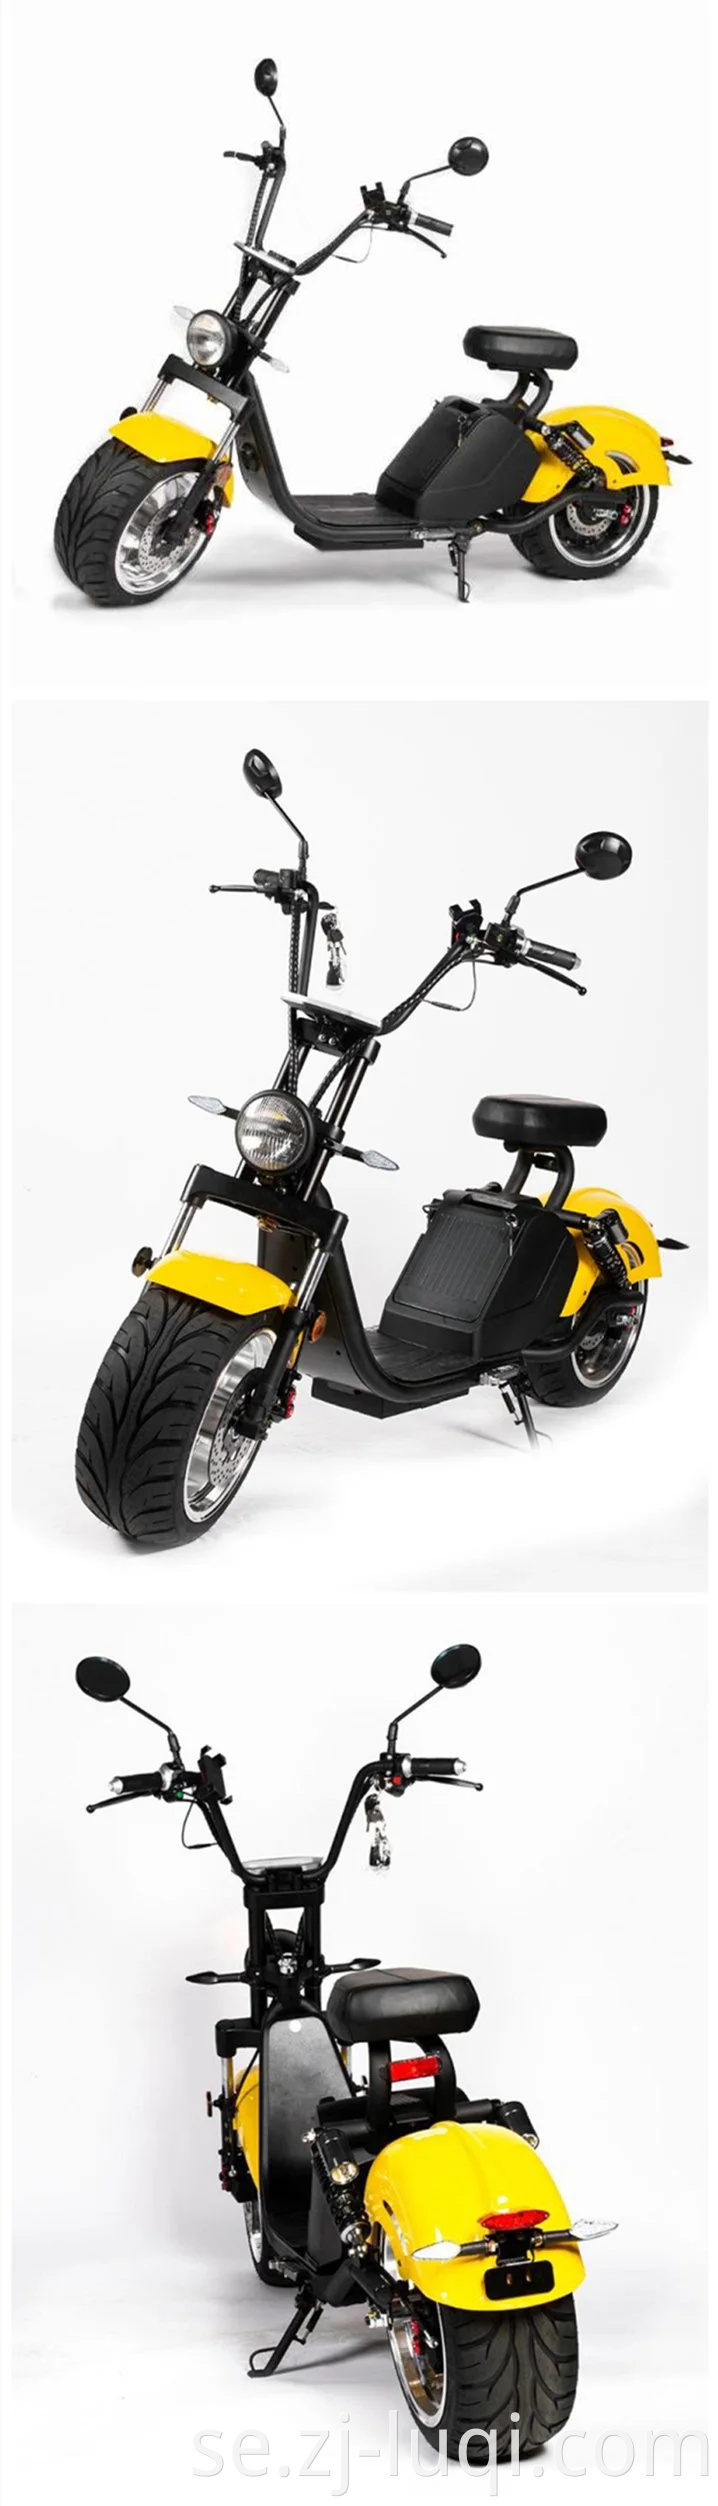 Partihandel Bästa köp 2020 Ny motorcykel EEG fettdäck 1500W/3000W Citycoco vuxen chopper scooter elektrisk